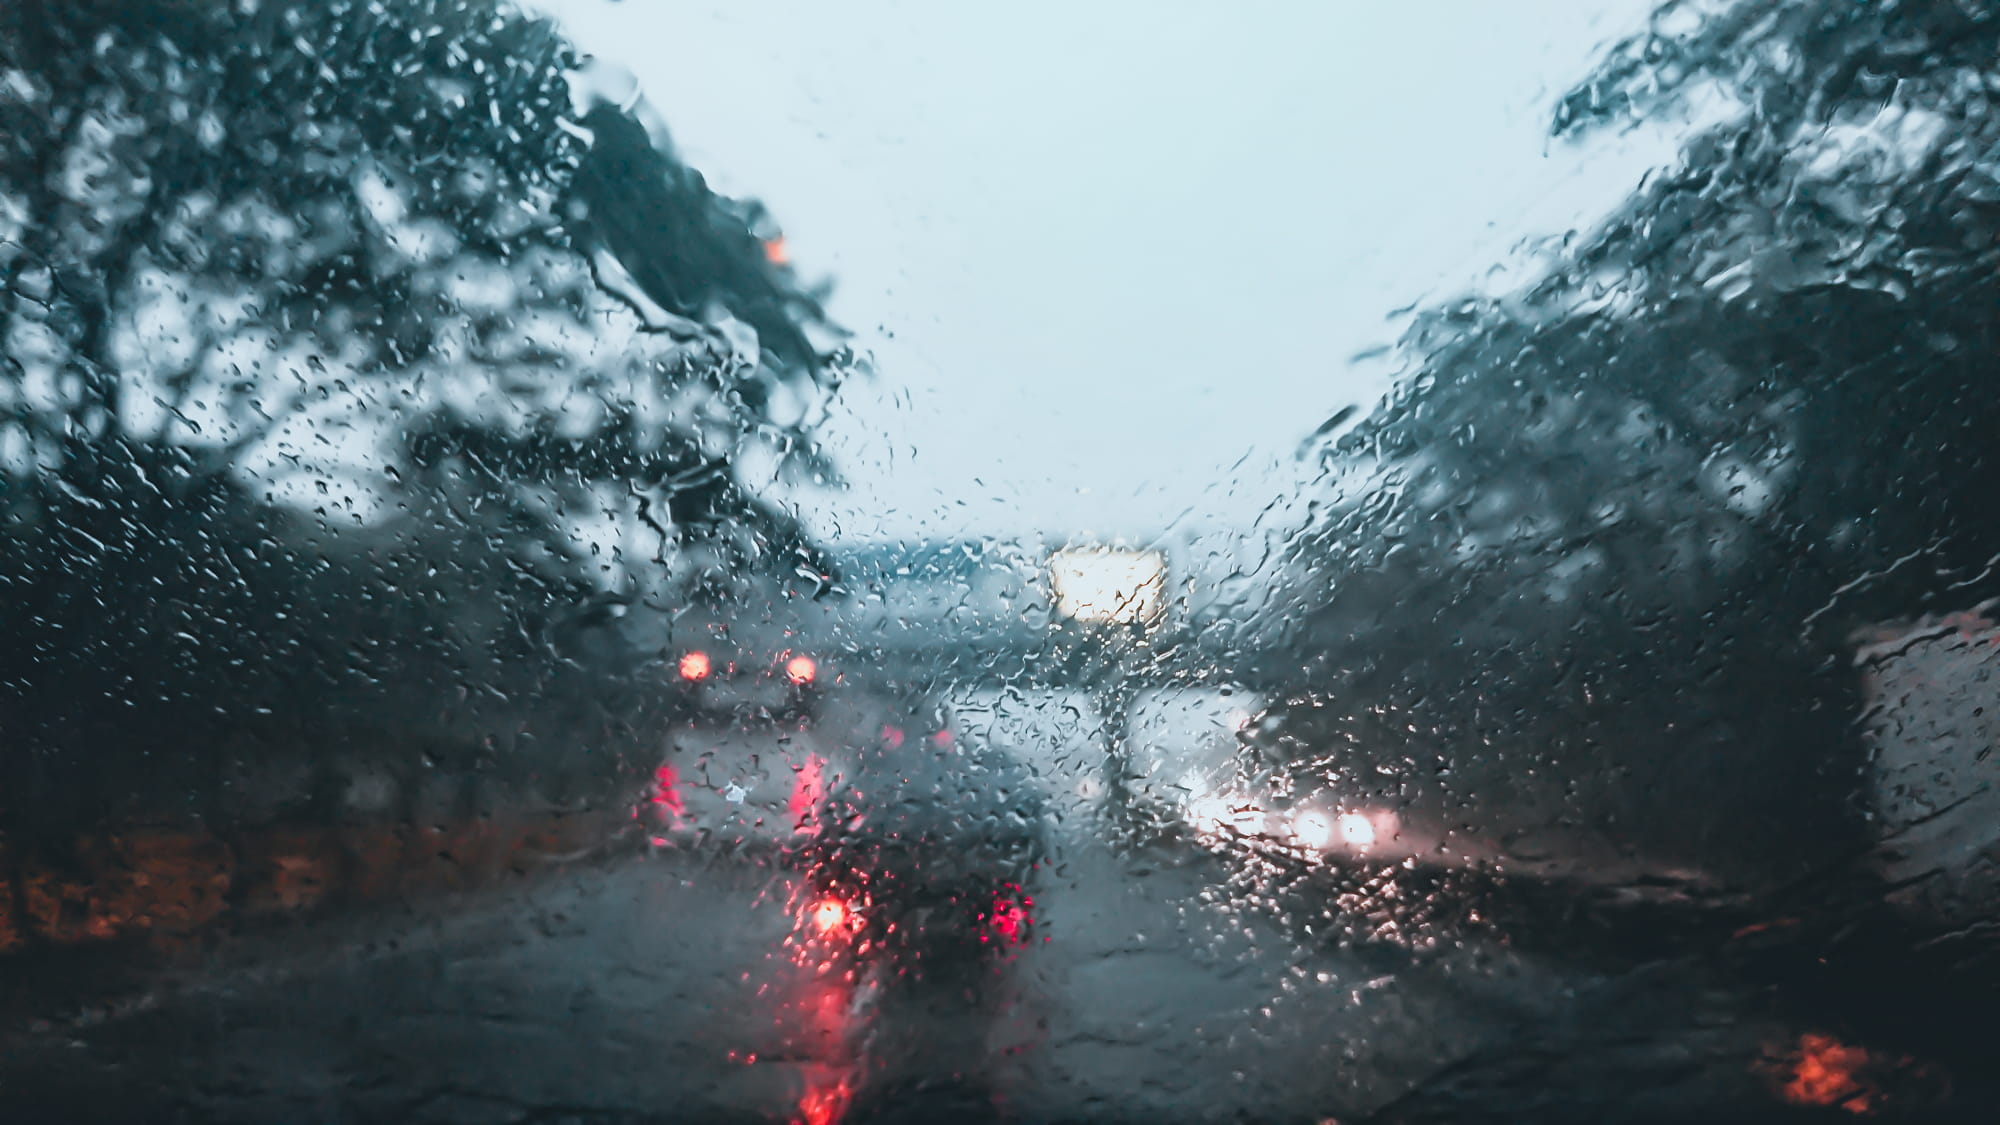 Comment conduire sous la pluie en sécurité